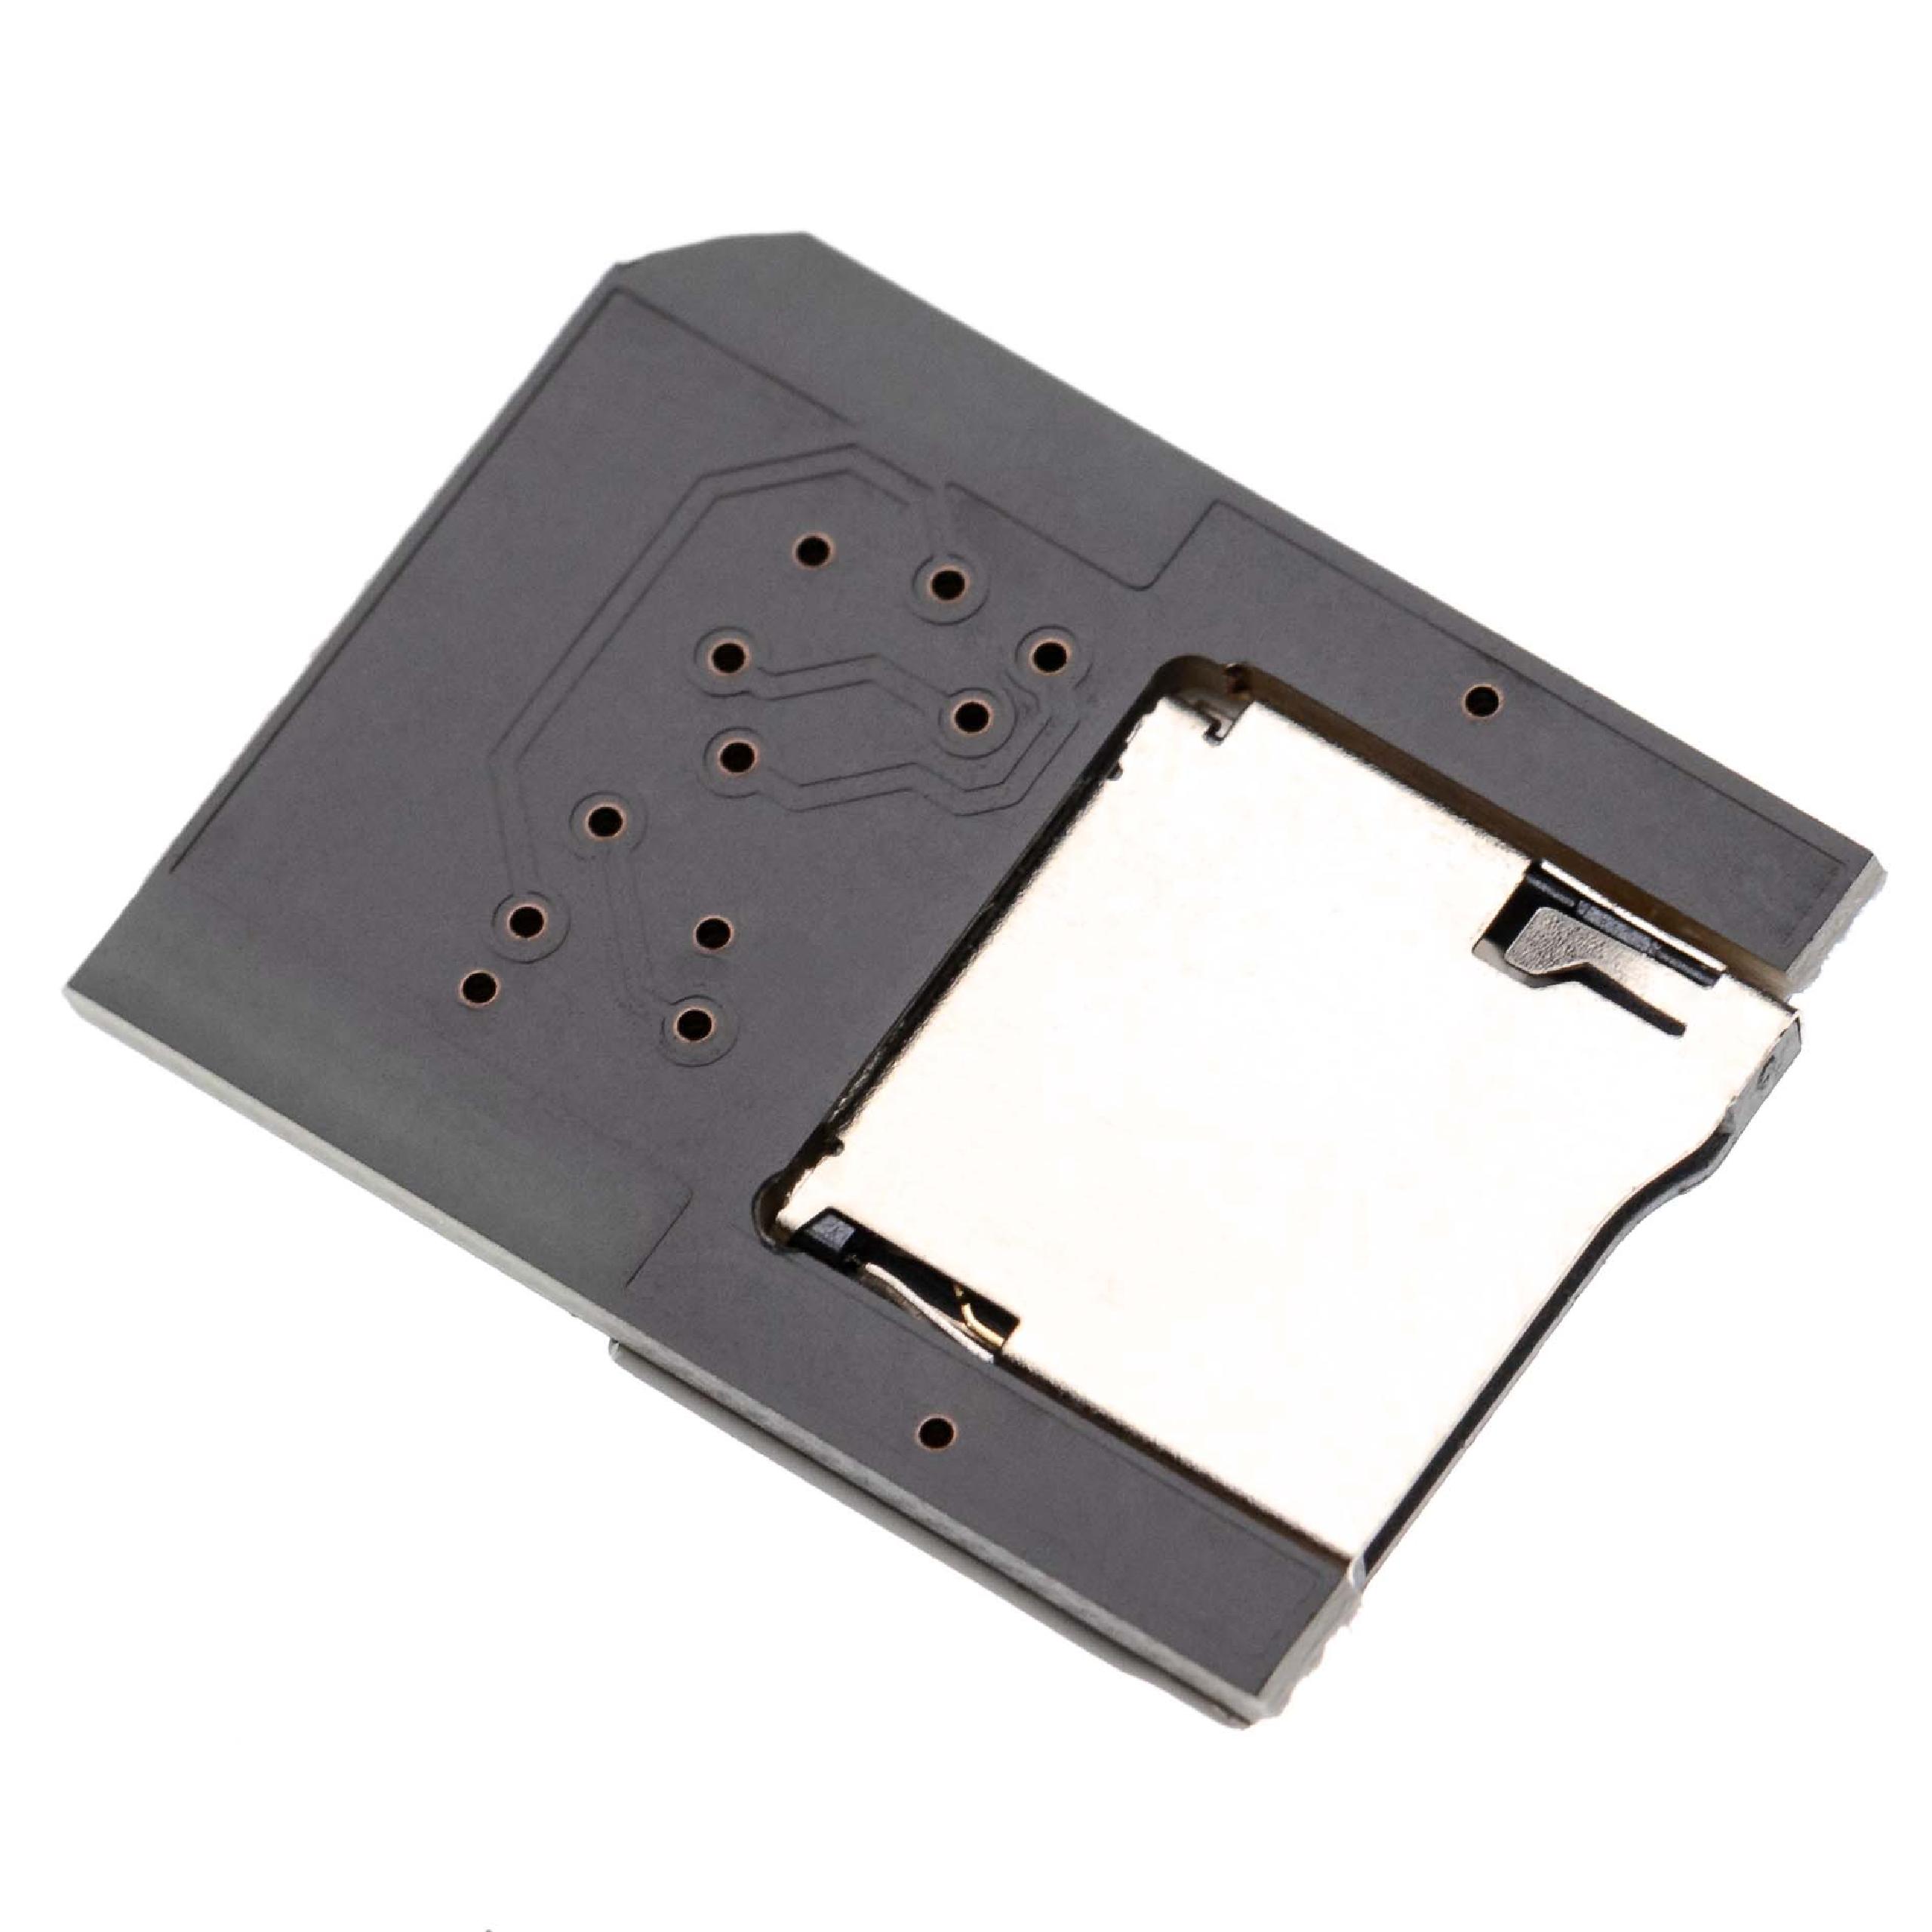 SD Kartenadapter passend für PlayStation Vita 1000, 2000 Spielekonsole - SD Speicherkarten Konverter